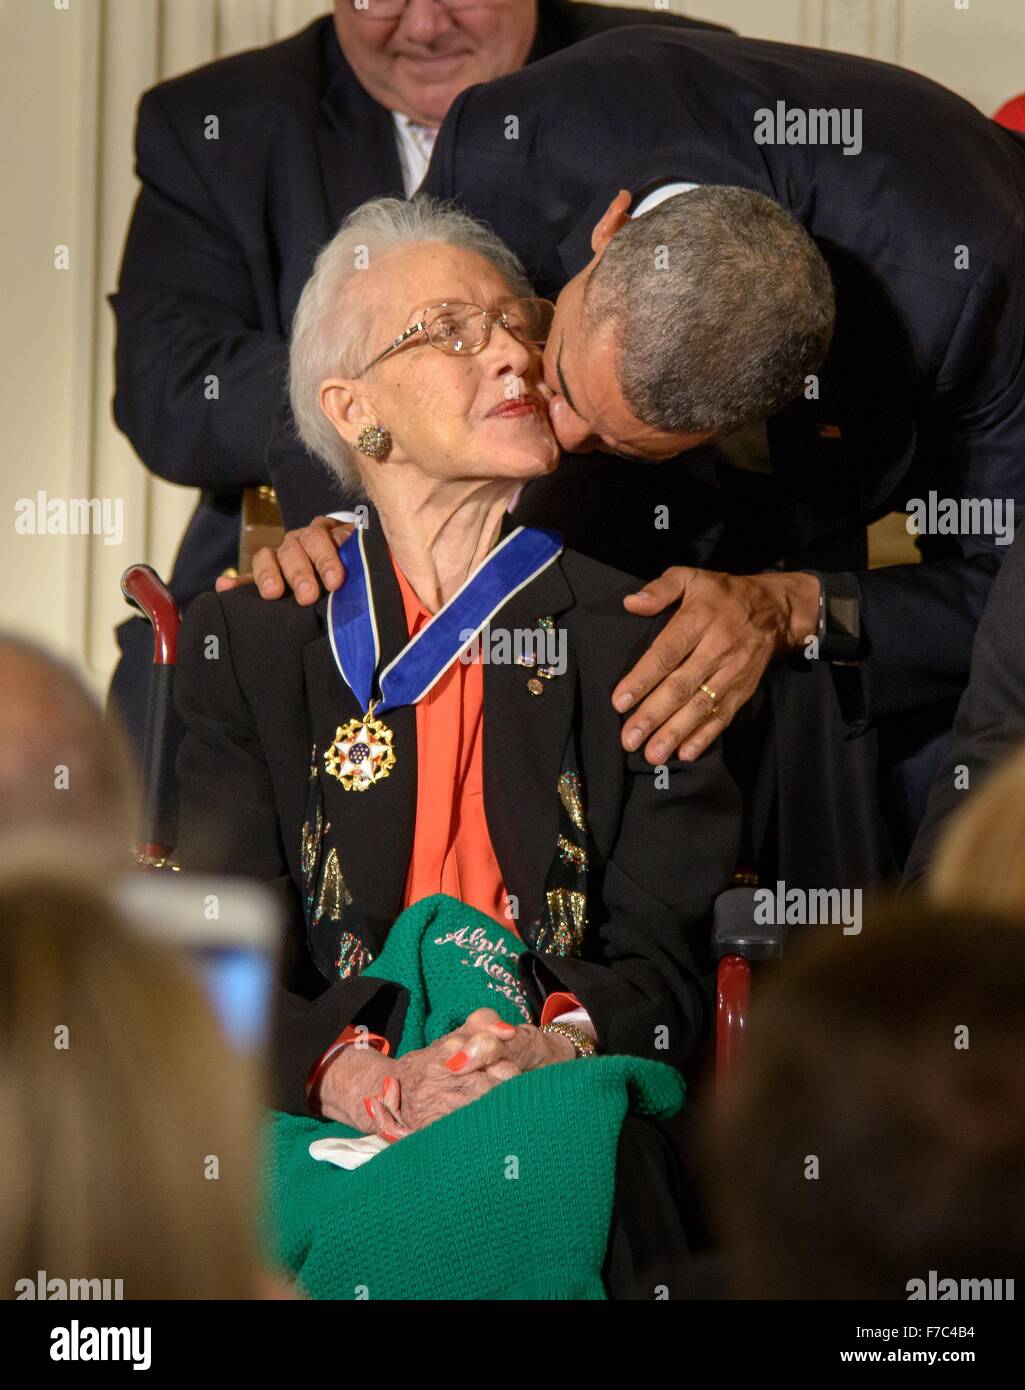 Le président des États-Unis, Barack Obama, mathématicien de la NASA embrasse Katherine Johnson sur la joue après lui remettant la Médaille présidentielle de la liberté à partir de la Chambre lors d'une cérémonie dans l'East Room de la Maison Blanche le 24 novembre 2015 à Washington, DC. Banque D'Images